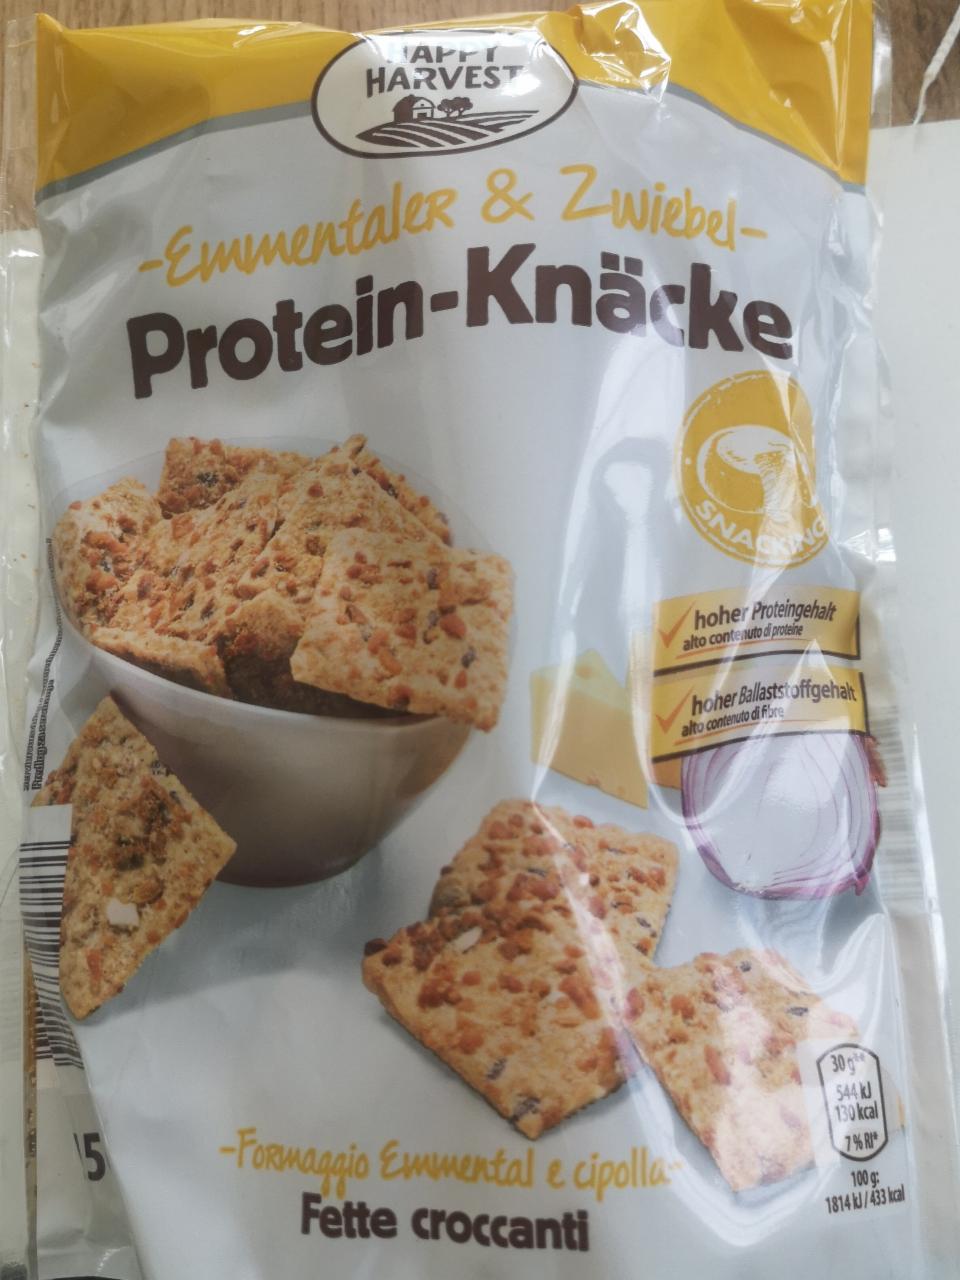 Fotografie - Protein-Knäcke Emmentaler & Zwiebel Happy Harvest